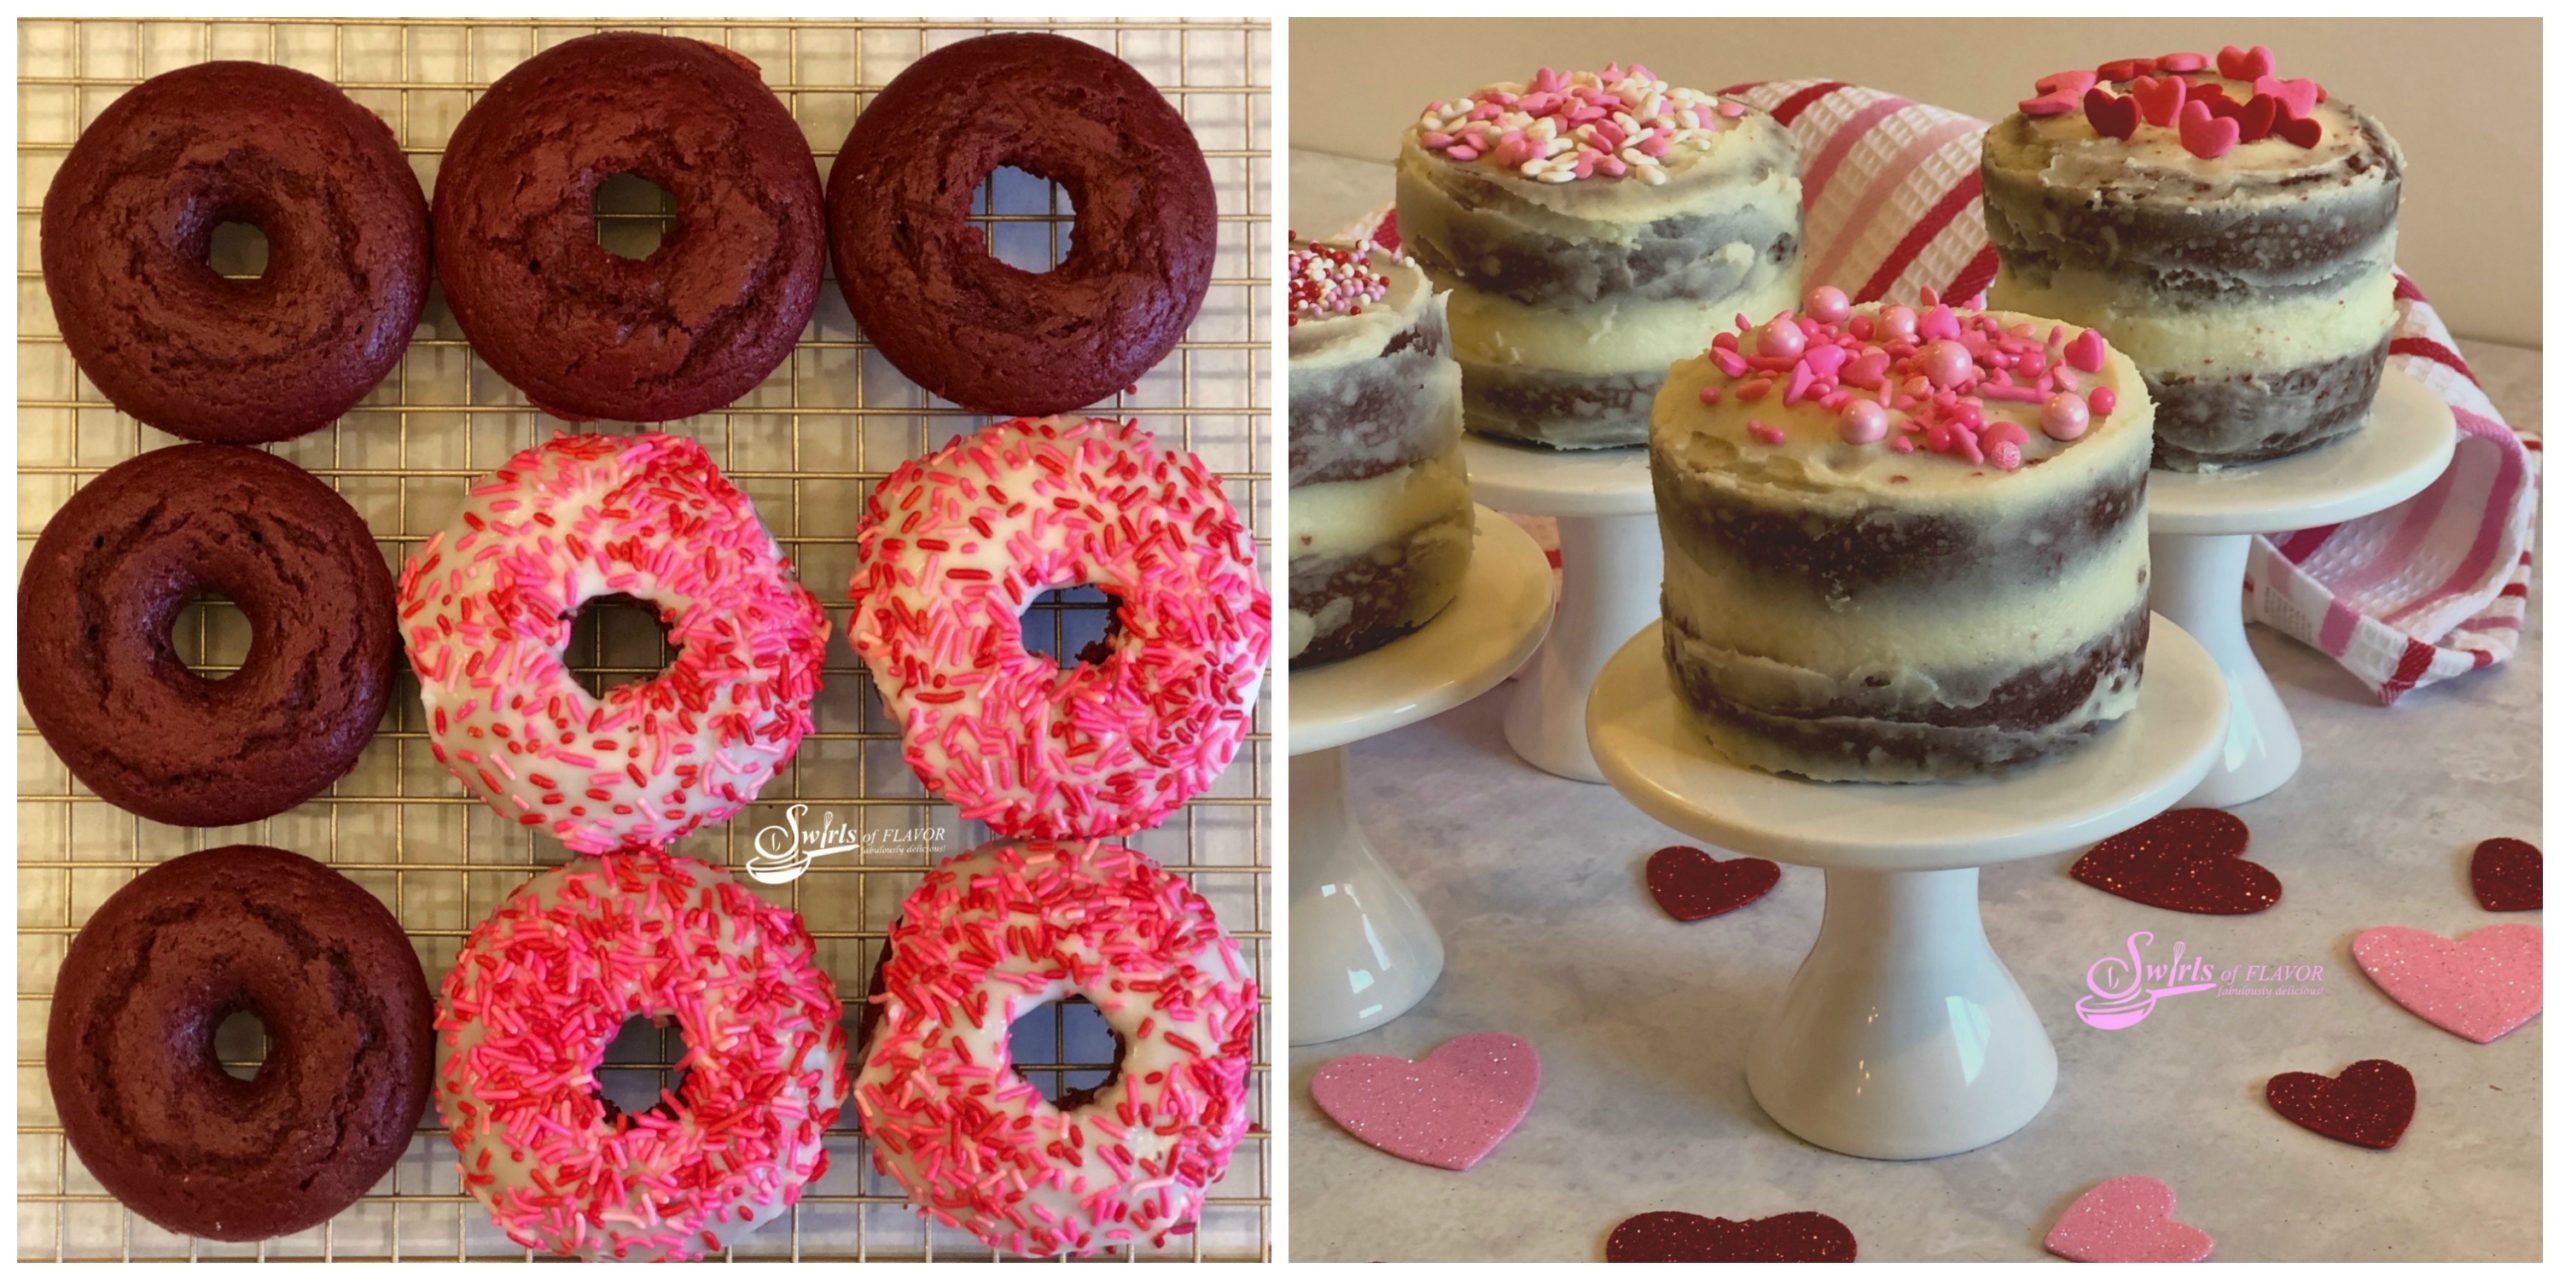 Red Velvet Donuts and Red Velvet Mini Cakes